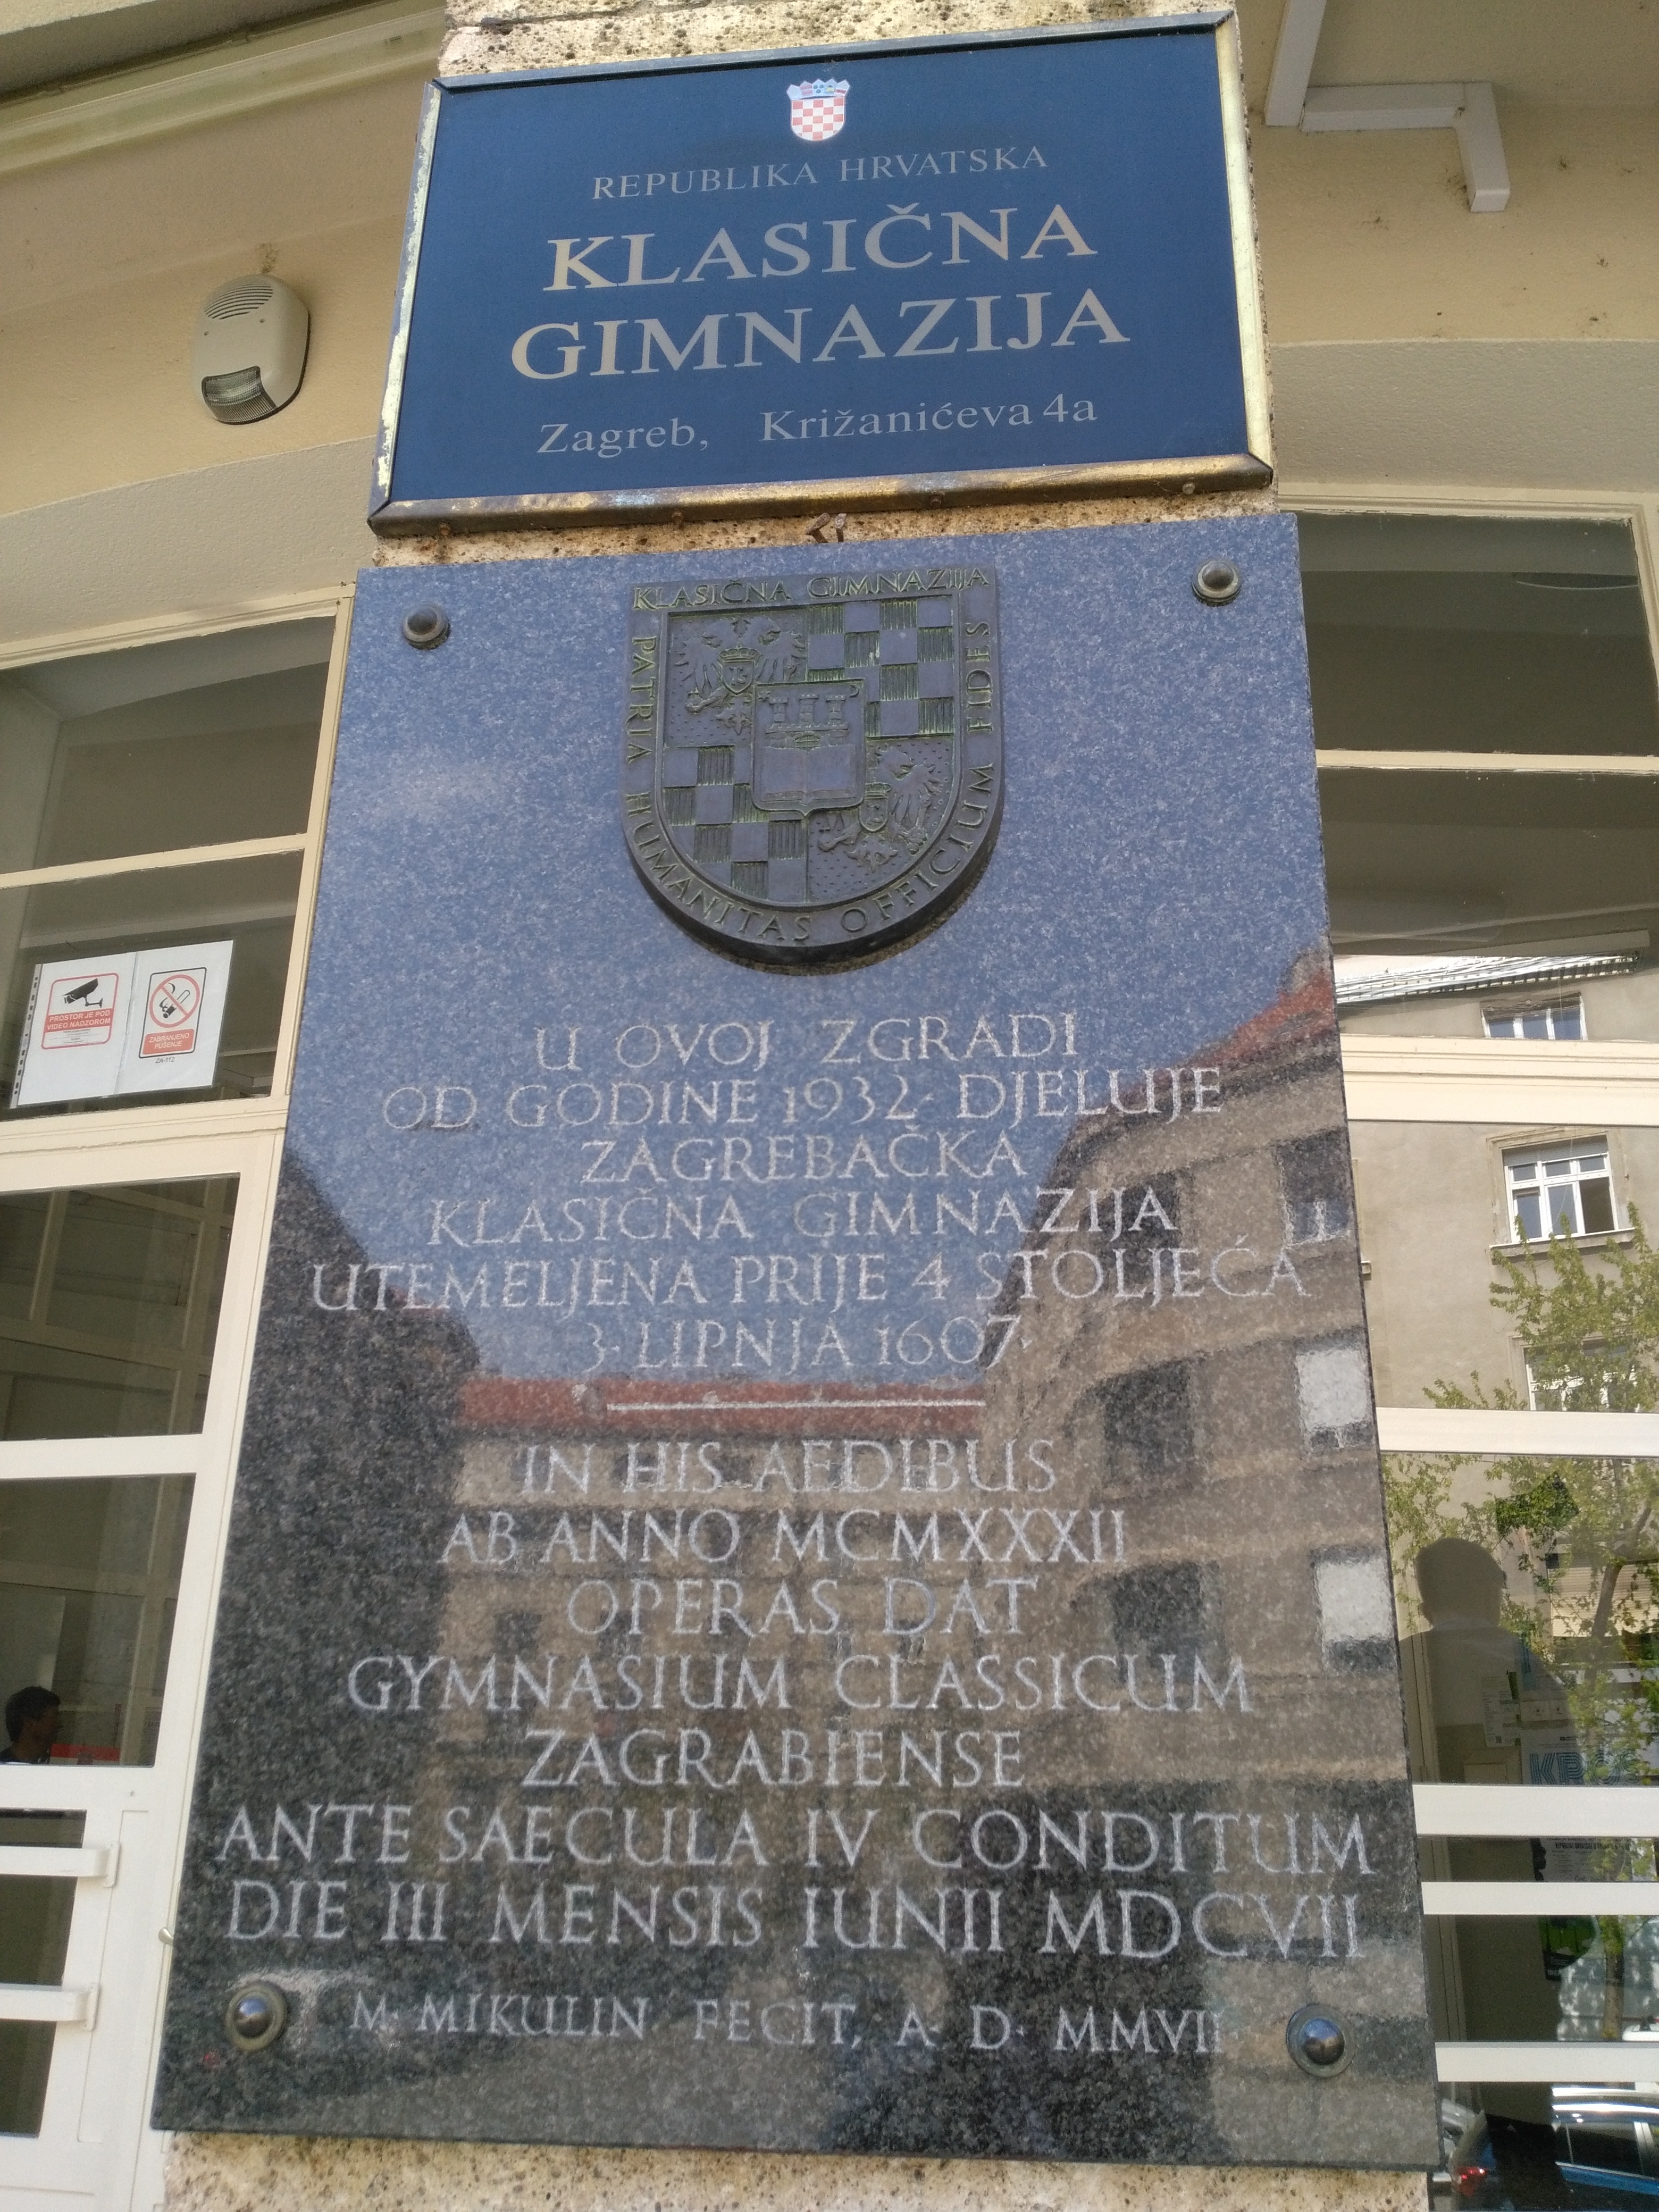 Ploča s nazivom Klasične gimnazije i memorijalna ploča postavljena 2007. godine prilikom proslave 400. godišnjice osnutka gimnazije od strane isusovaca u Zagrebu. (03-04-2019).